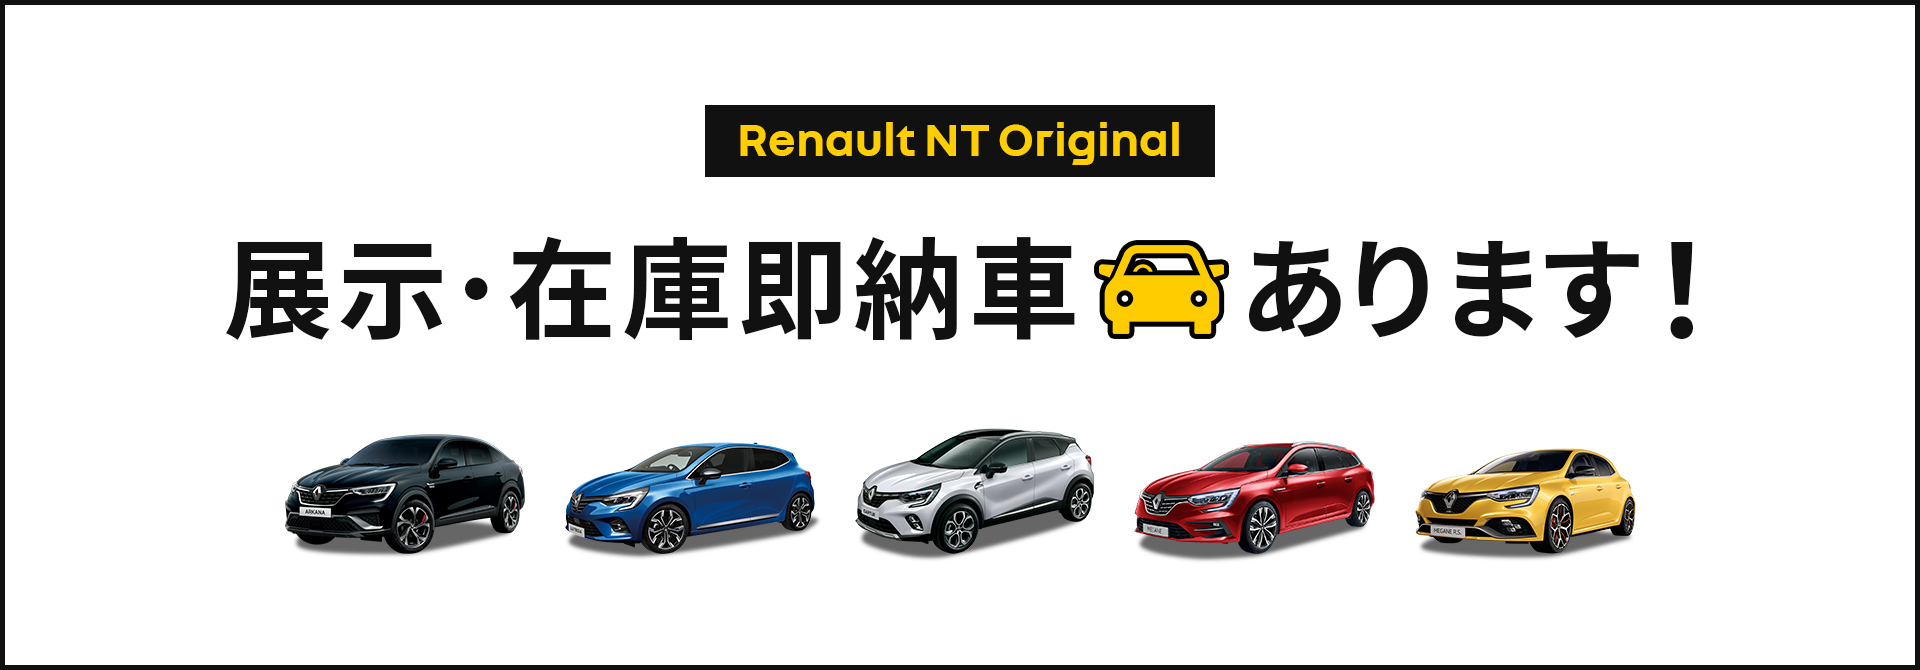 Renault NT Original Campaign 早納車あります！